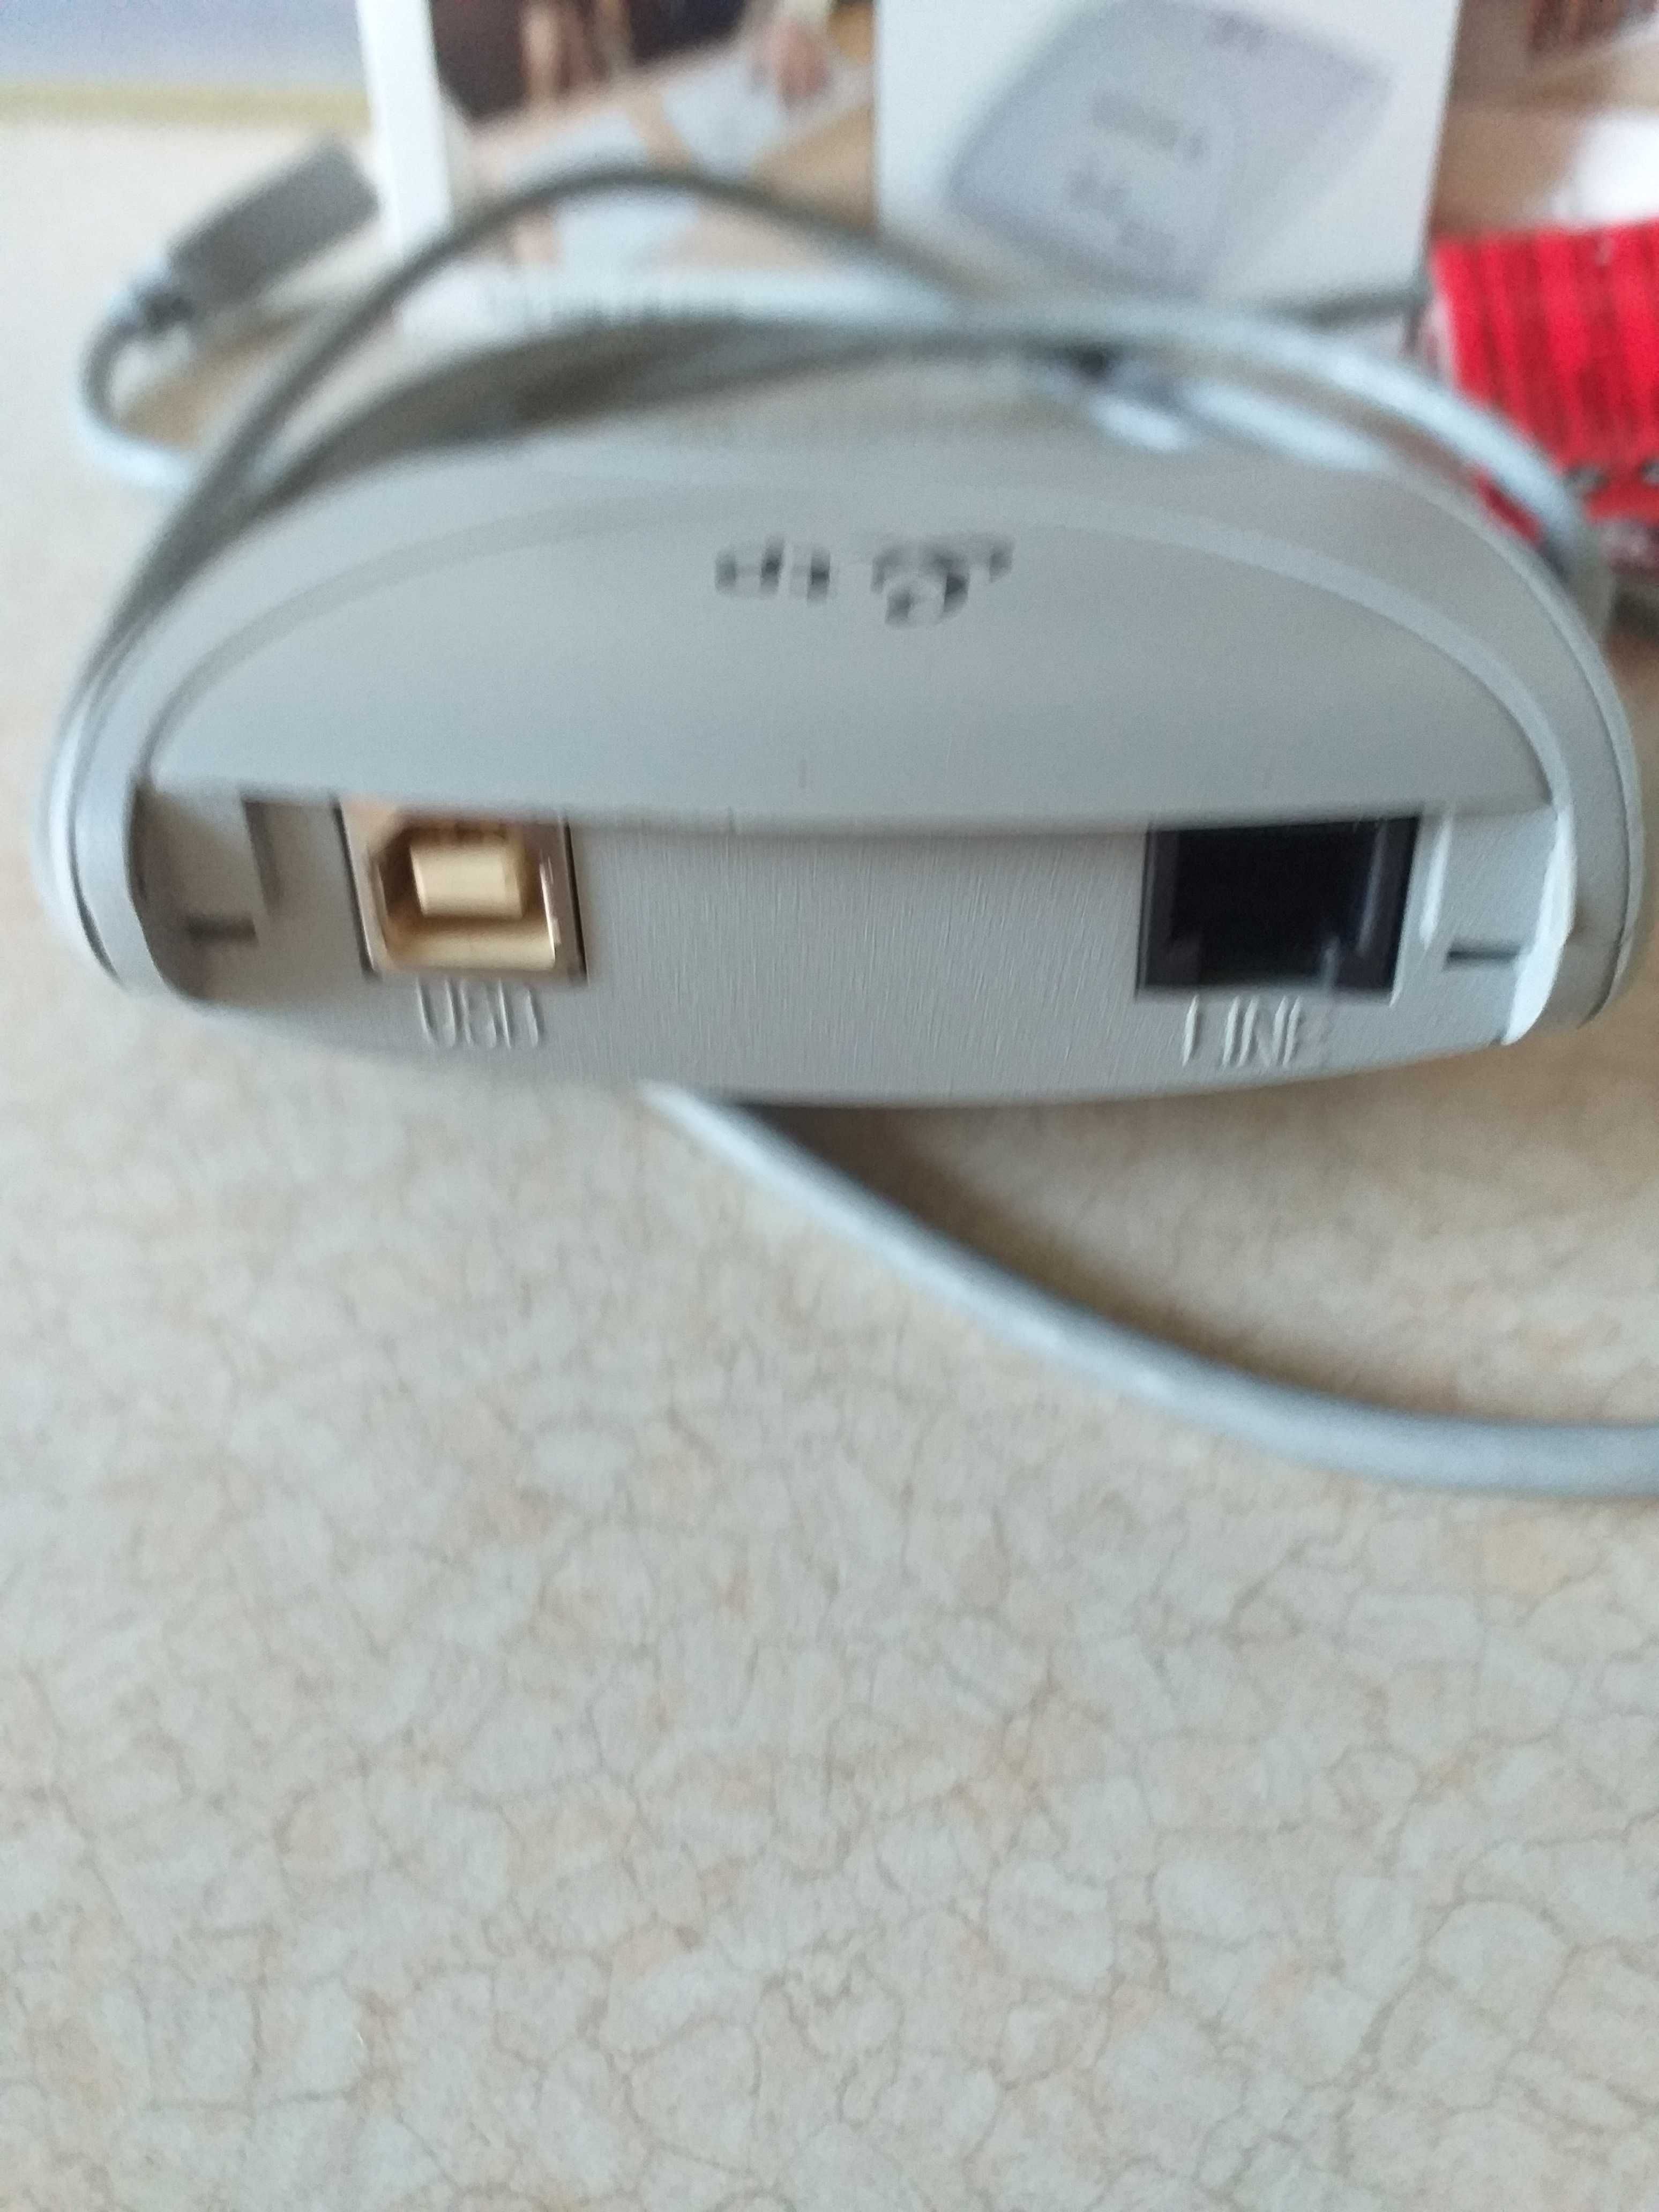 Modem ADSL Sagem Fast 800 USB Neostrada TP Orange